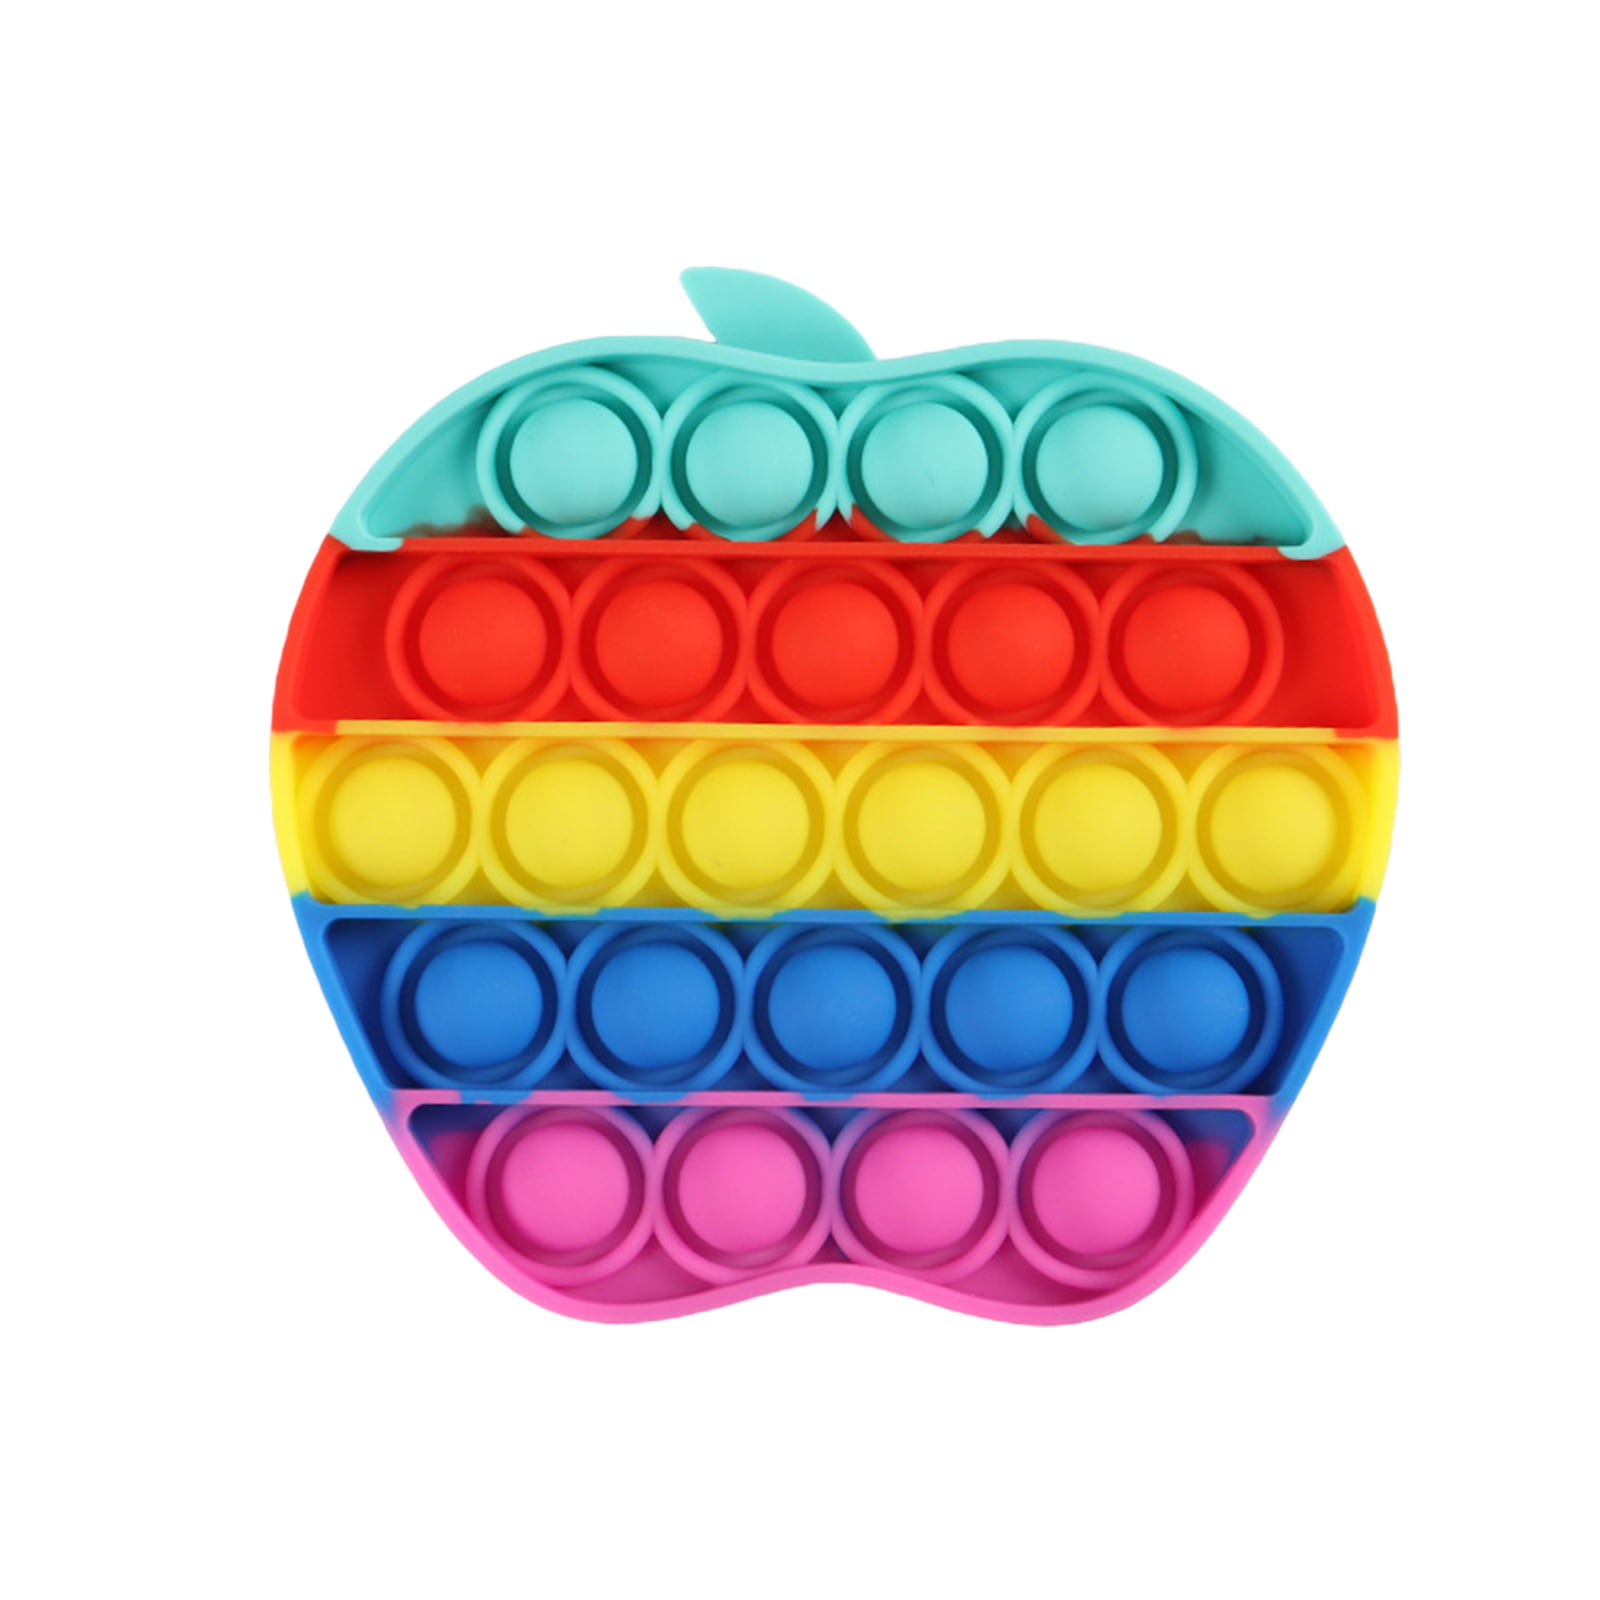 Details about   Pop it its Push Bubble Fidget Rainbow Luminous Sensory Toy Game Stress Reliever 